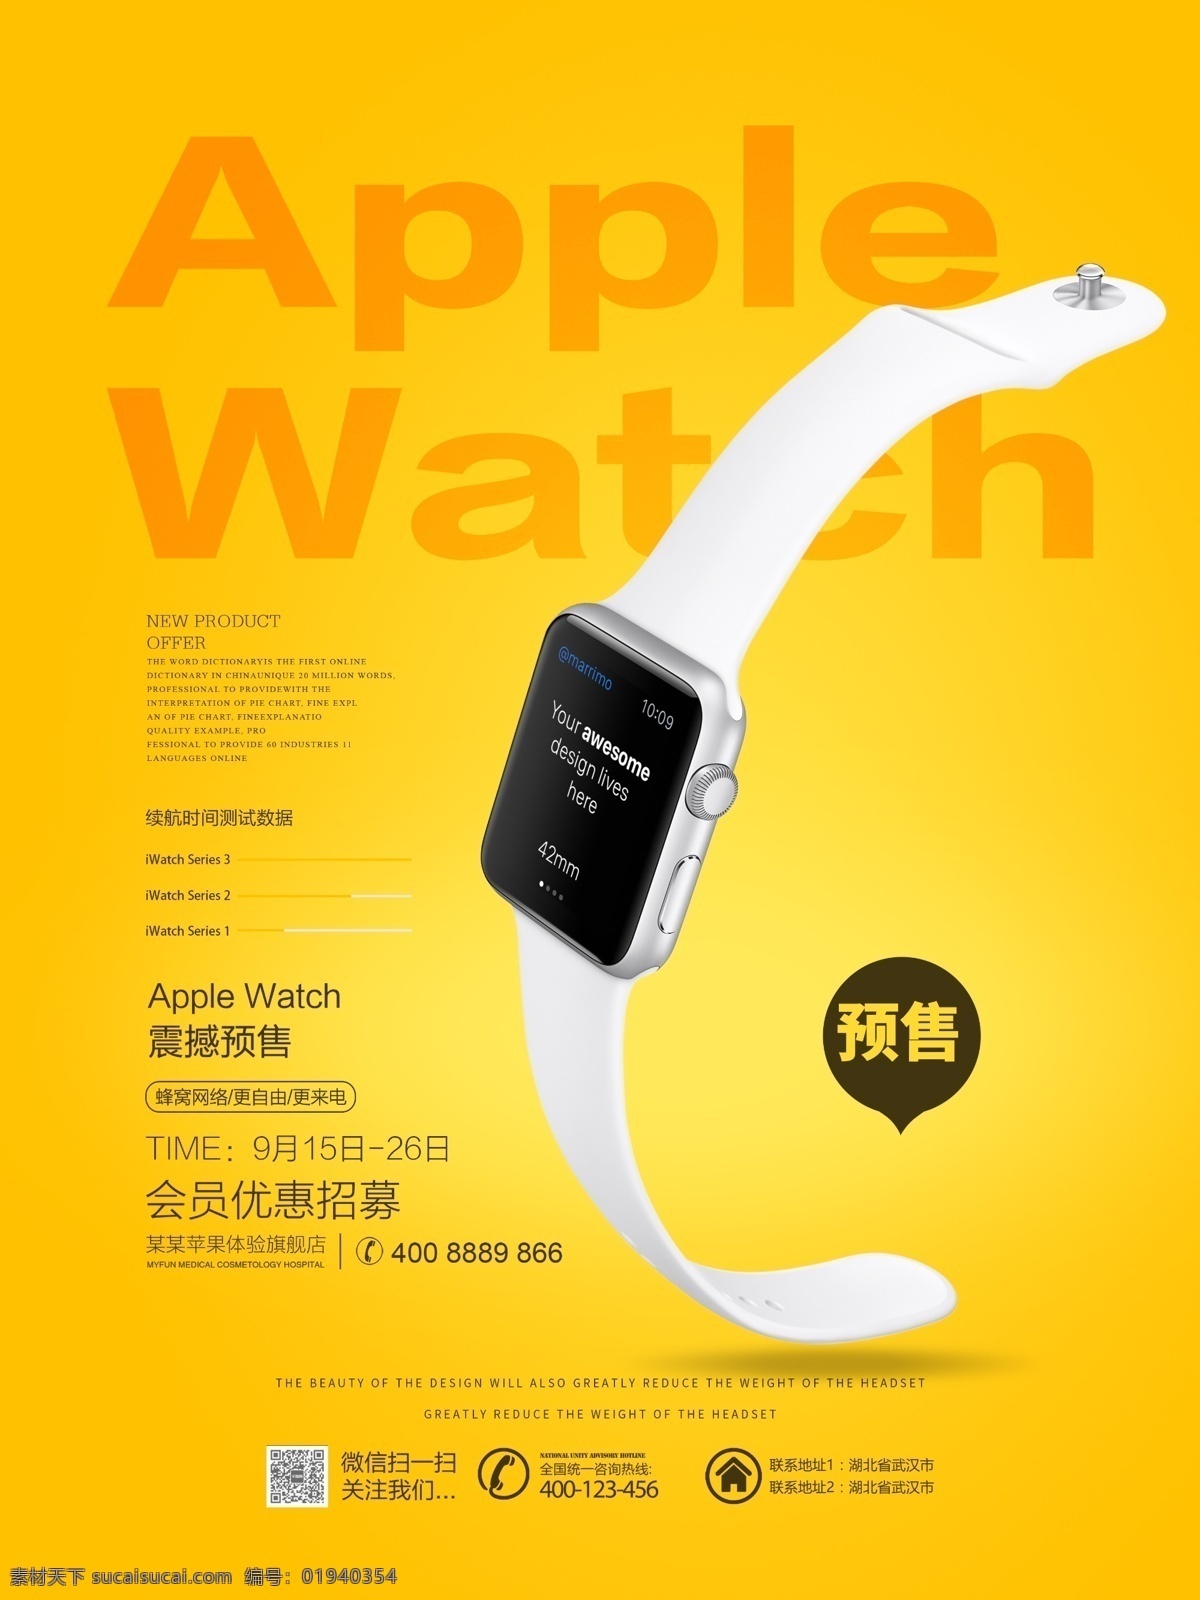 橙色 清新 简约 苹果 iwatch 促销 宣传海报 运动手表 苹果手表 apple watch 智能手表 手环 手表 宣传 海报